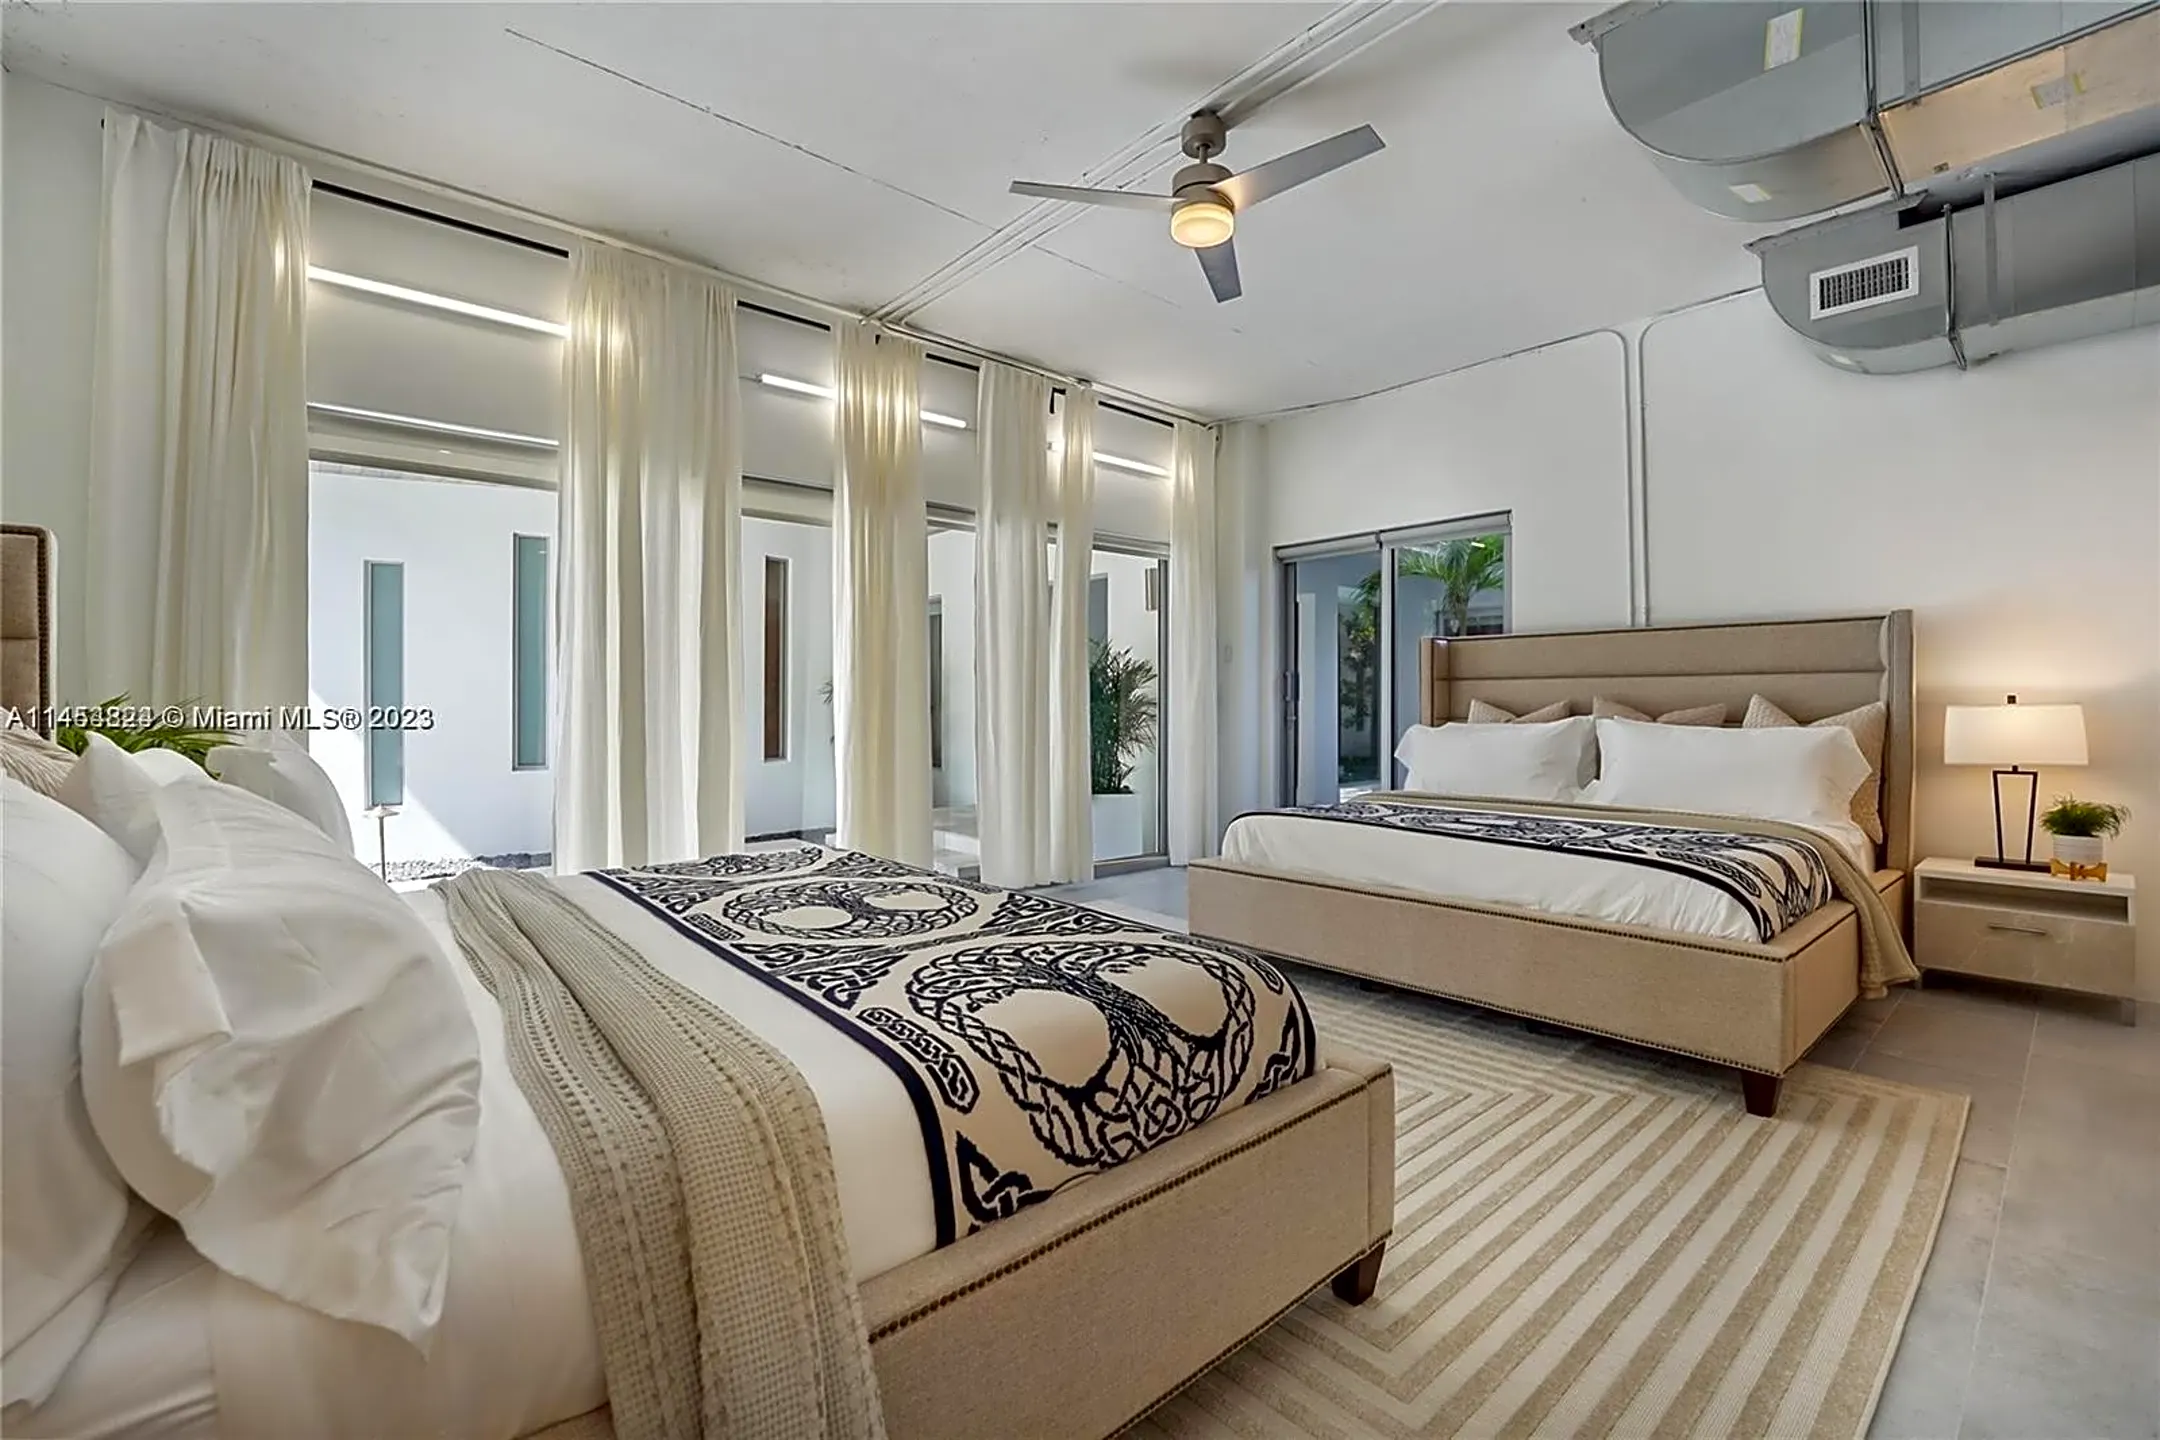 Bedroom - 5910 N Bayshore Dr - Miami, FL